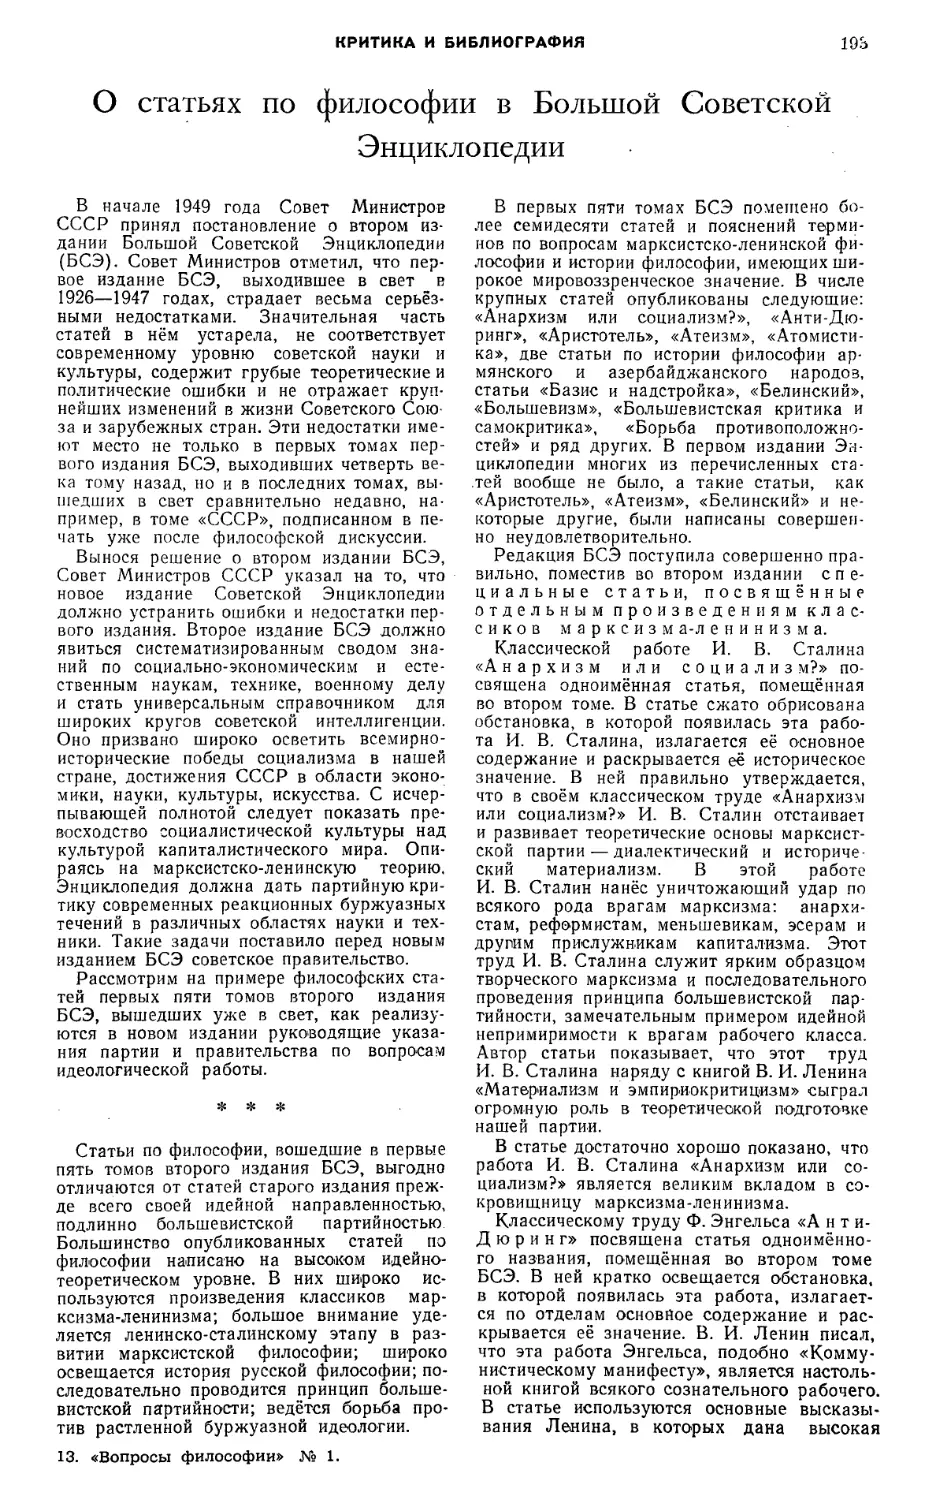 И. Д. Андреев, В. П. Рожин — О «статьях по философии в Большой Советской Энциклопедии